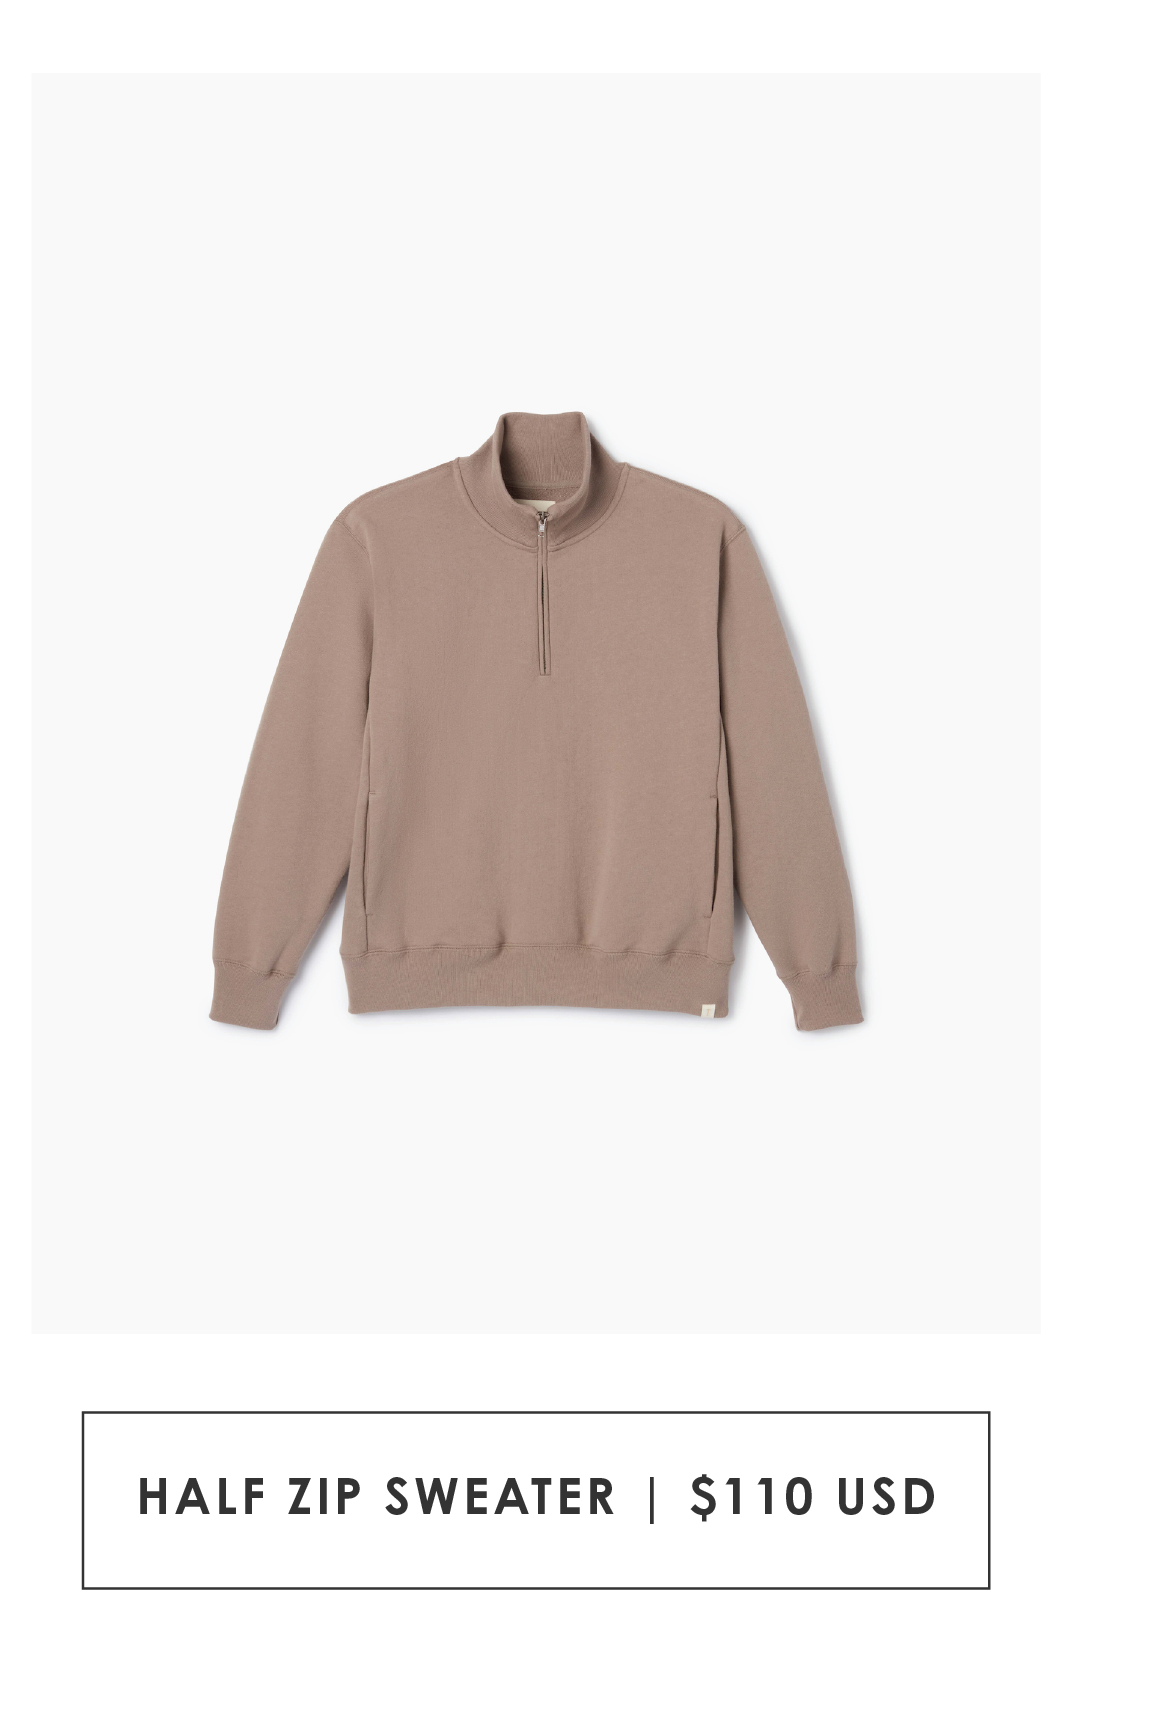 Half Zip Sweater | $110 USD